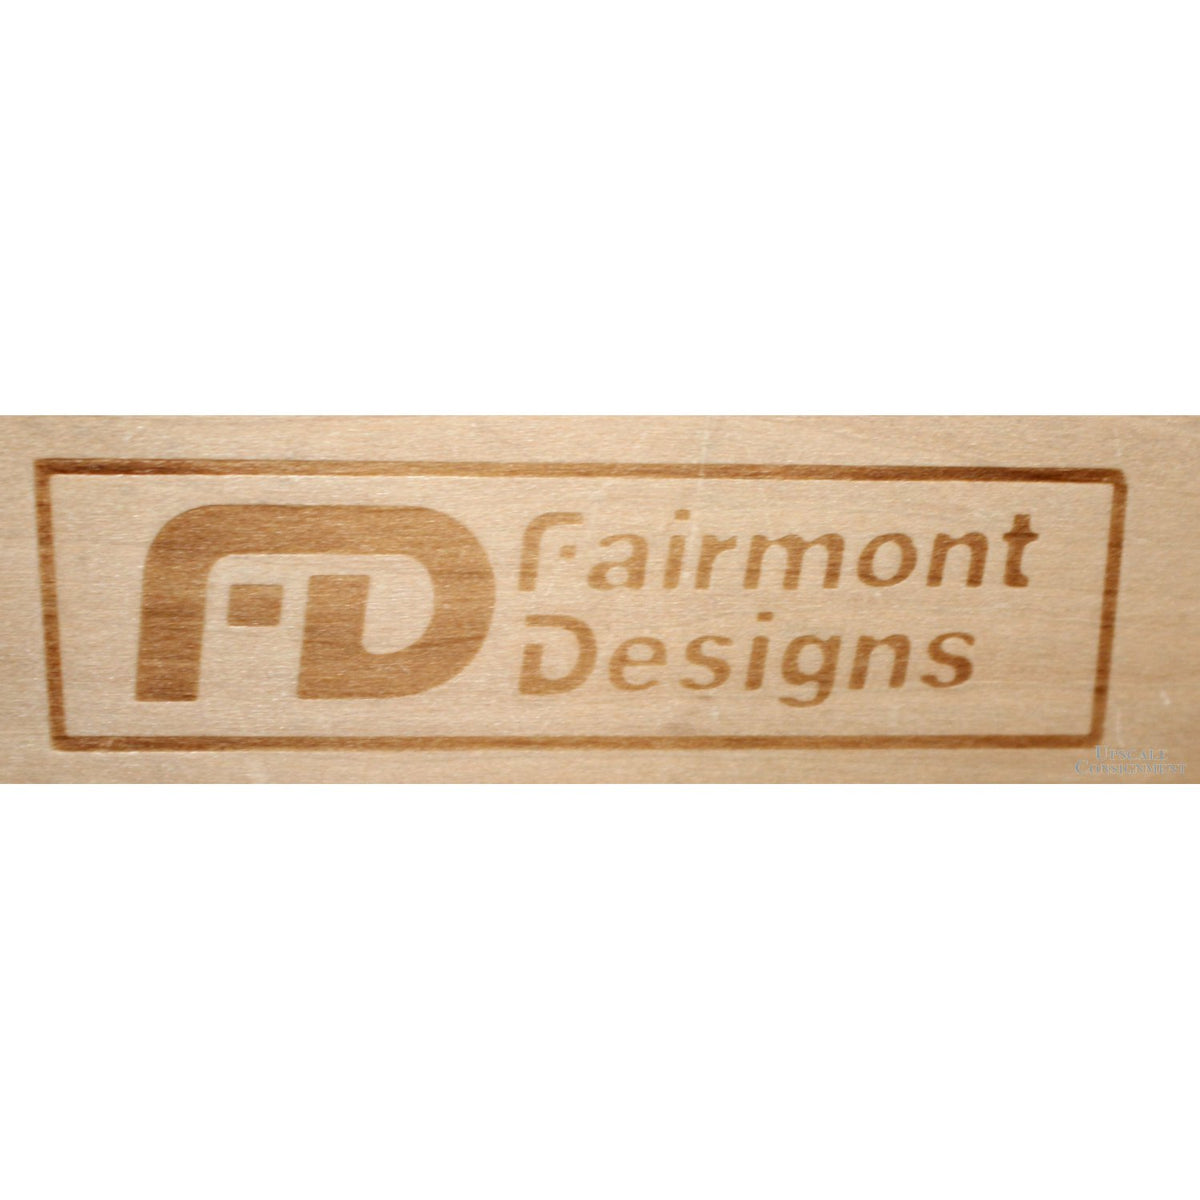 Fairmont Designs Bonnet Top China Cabinet